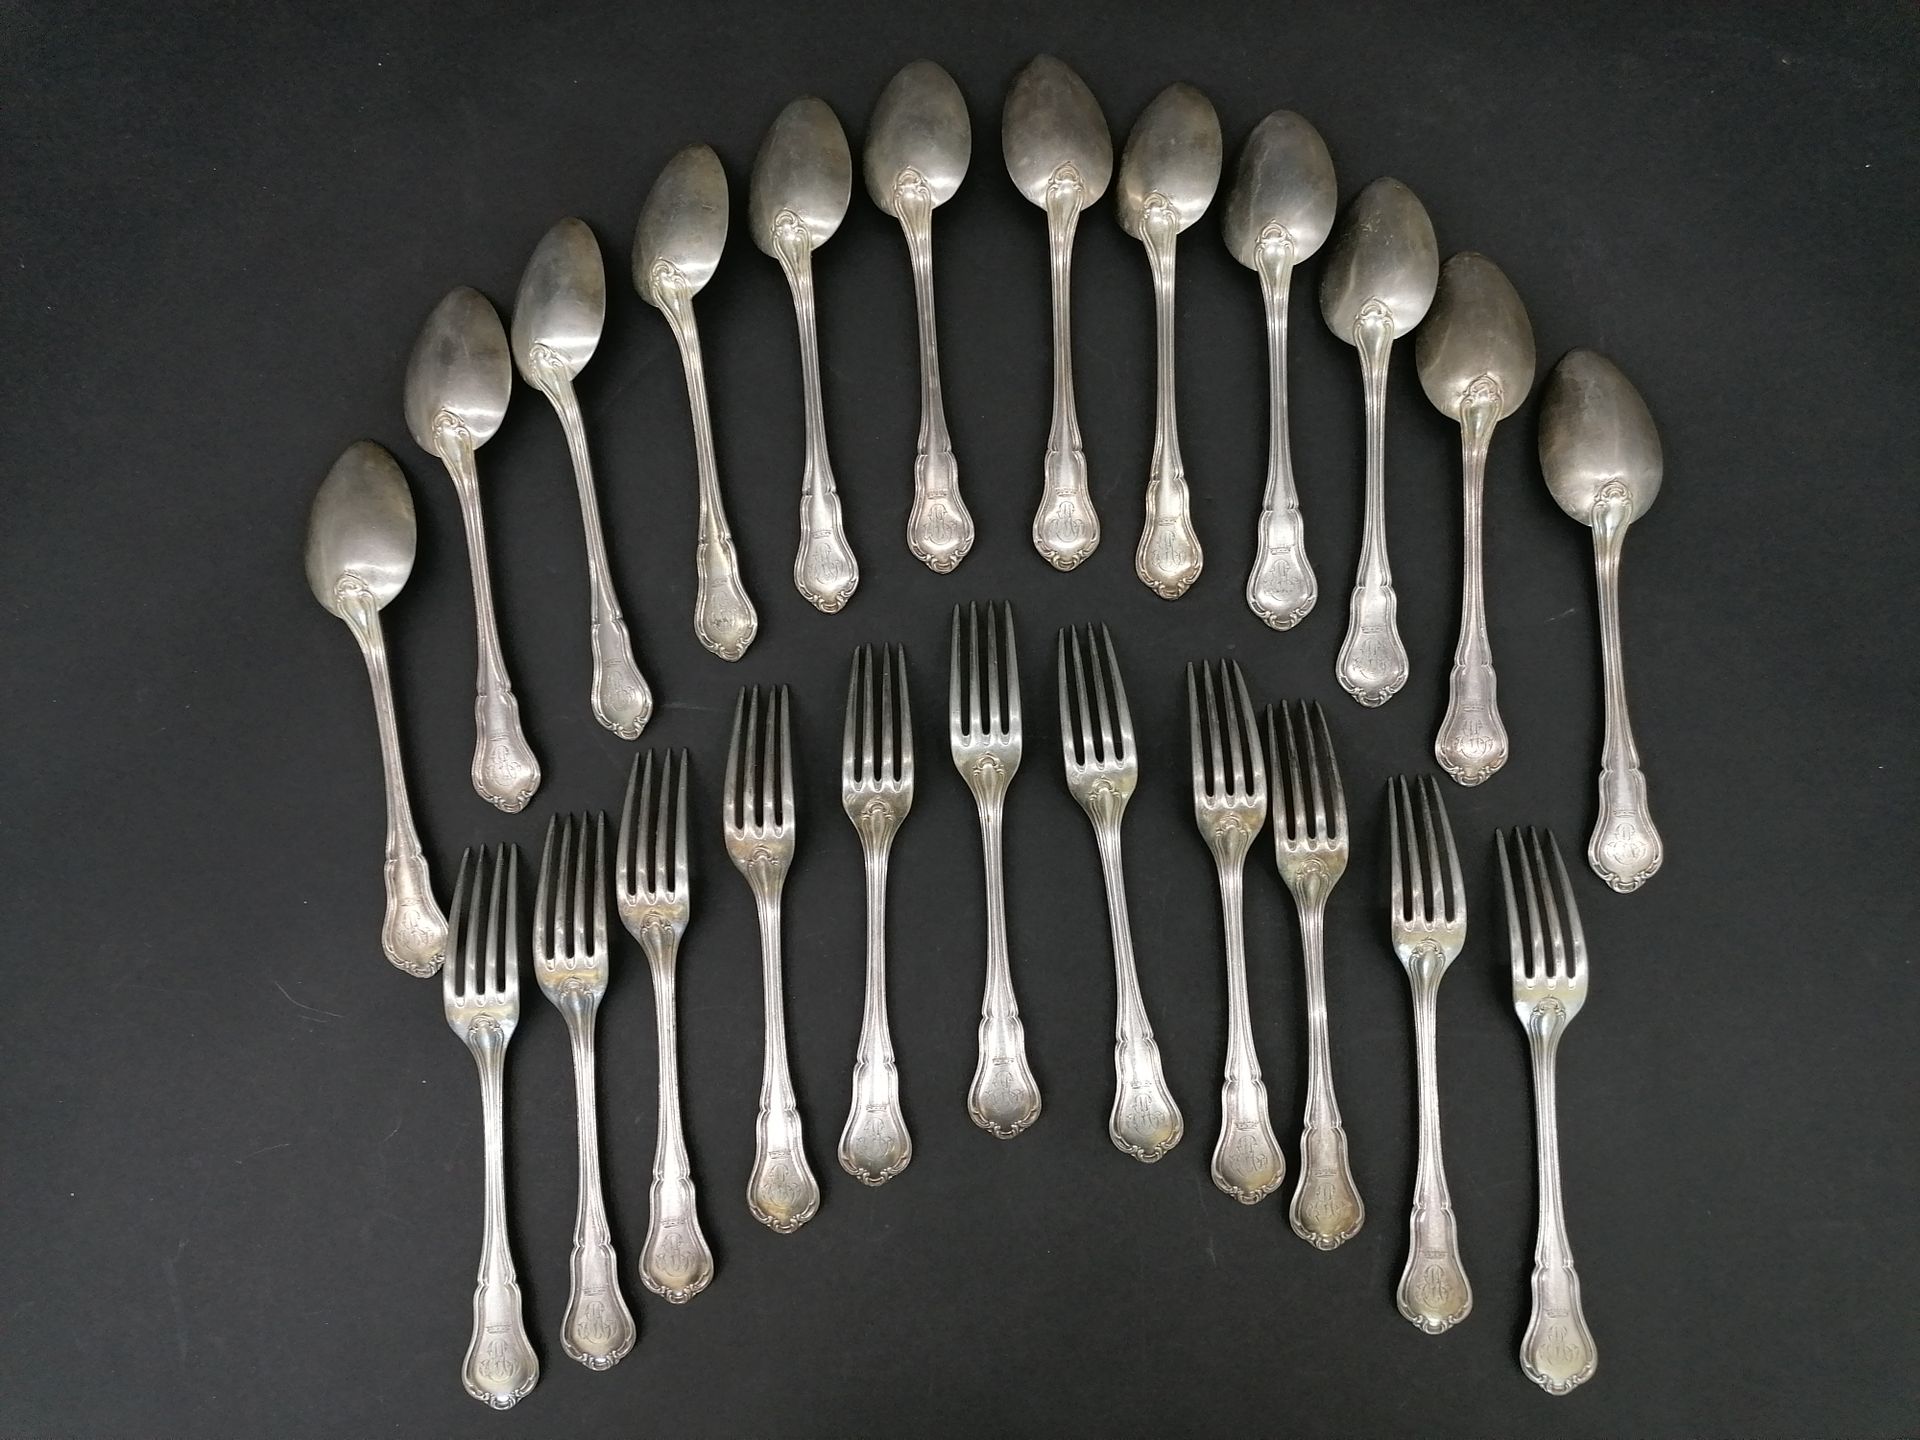 Null 属于银色家庭的一部分

十二个汤匙

11个桌叉

路易十五风格模型

Minerve的标志

在伯爵夫人的冠冕下，图为ME

PN : 2公斤